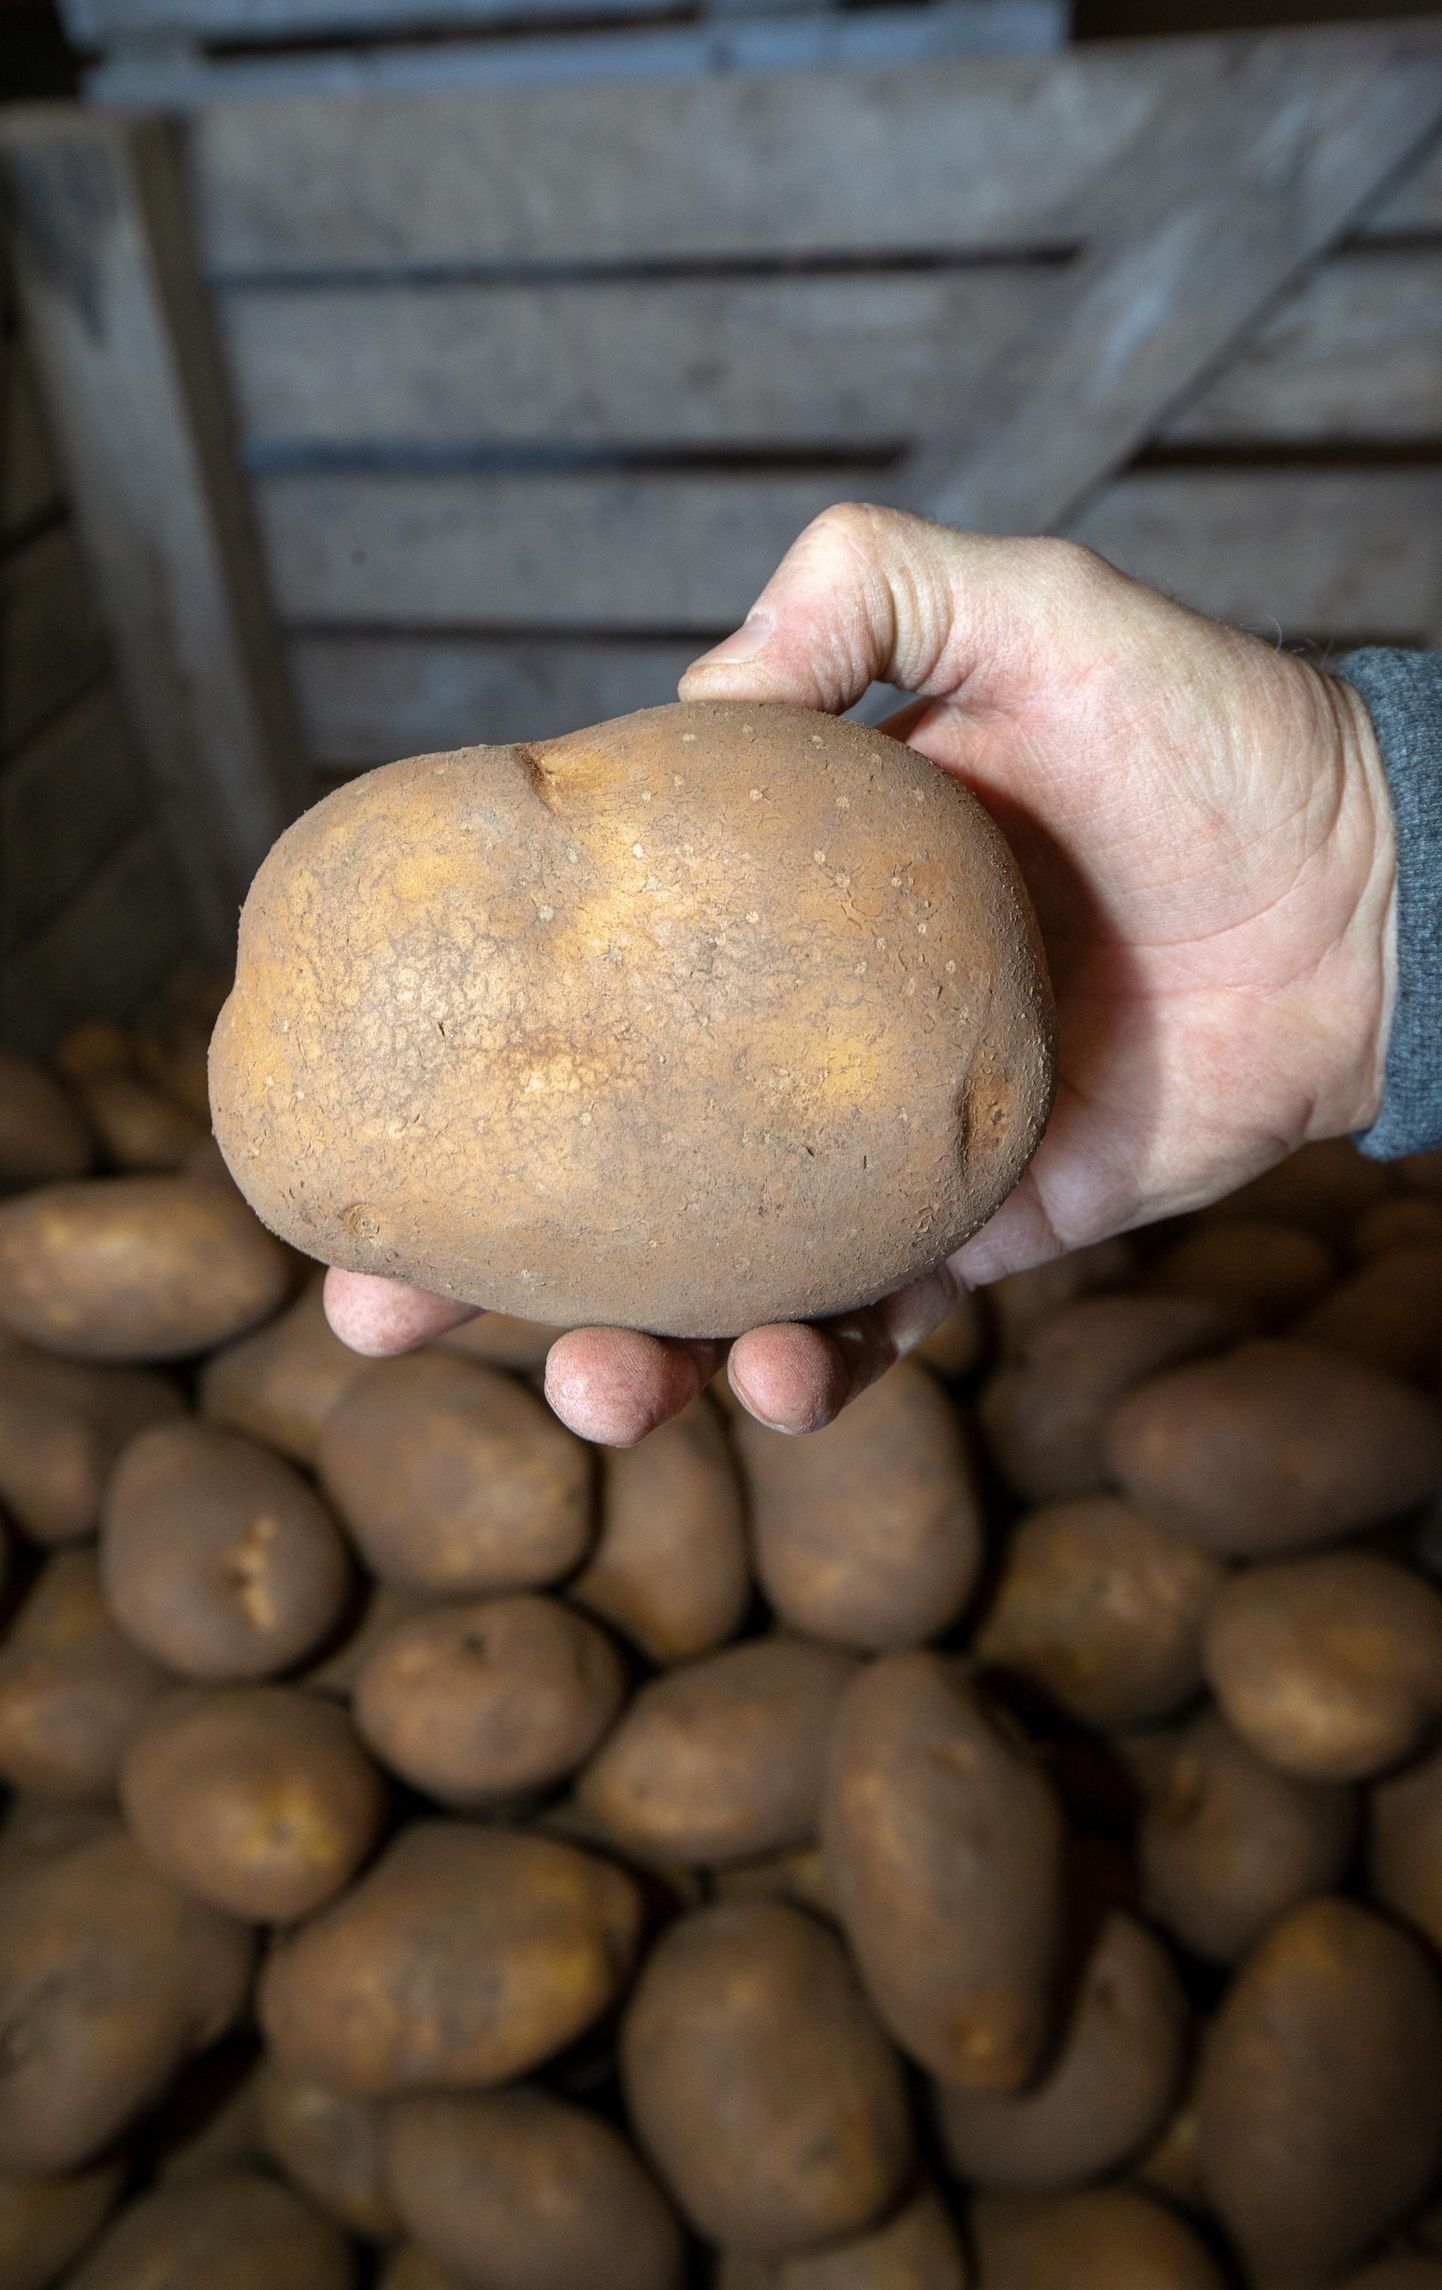 Mullune kuum suvi paisutas Saare-Anni talu põldudel kartulisordi «Teele» mugulaid isegi 700−800 grammi raskuseks.